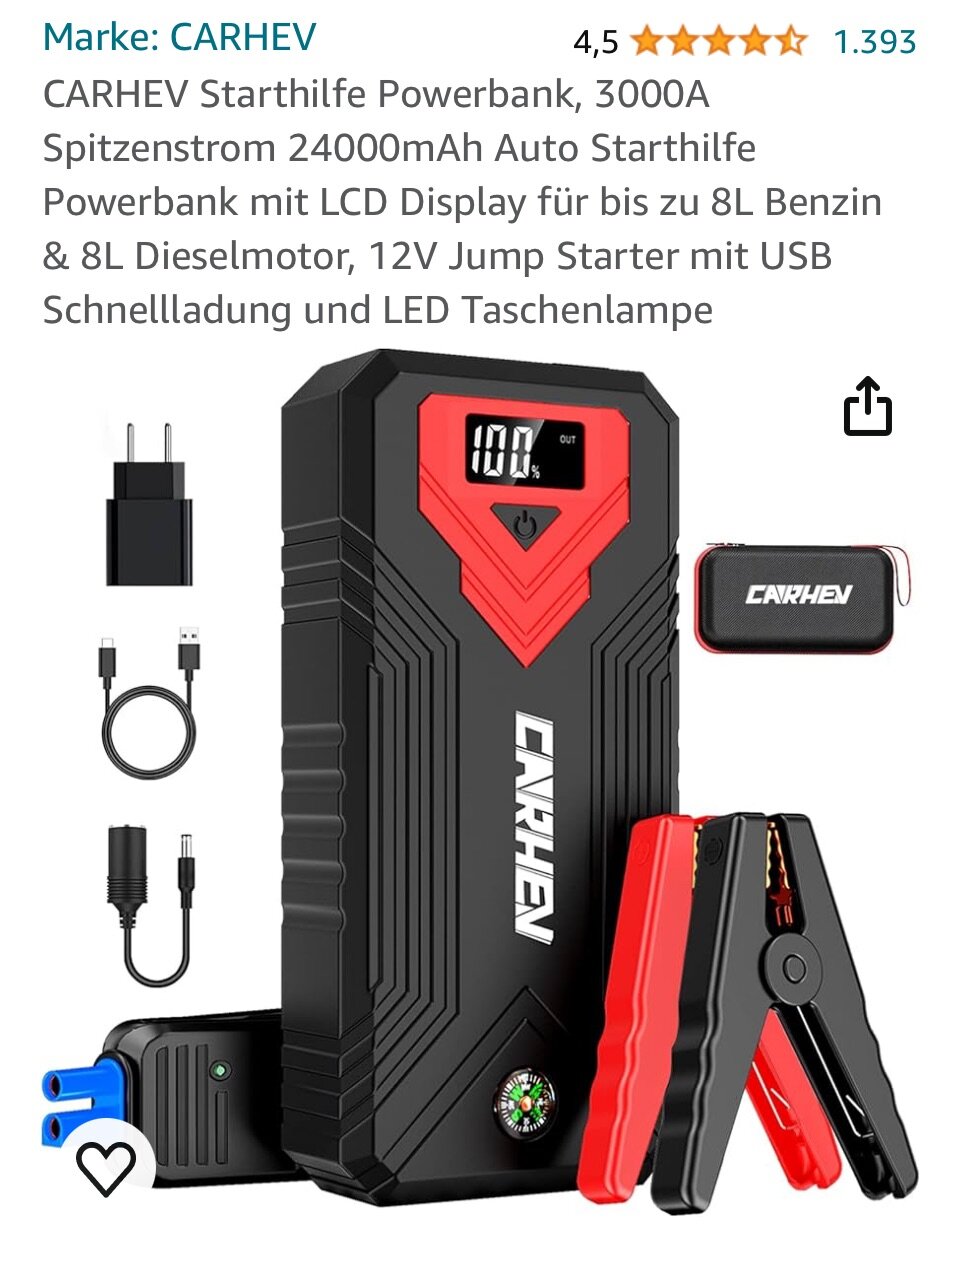 Batterie leer, wie Türen öffnen? - Technik - Audi A2 Club Deutschland